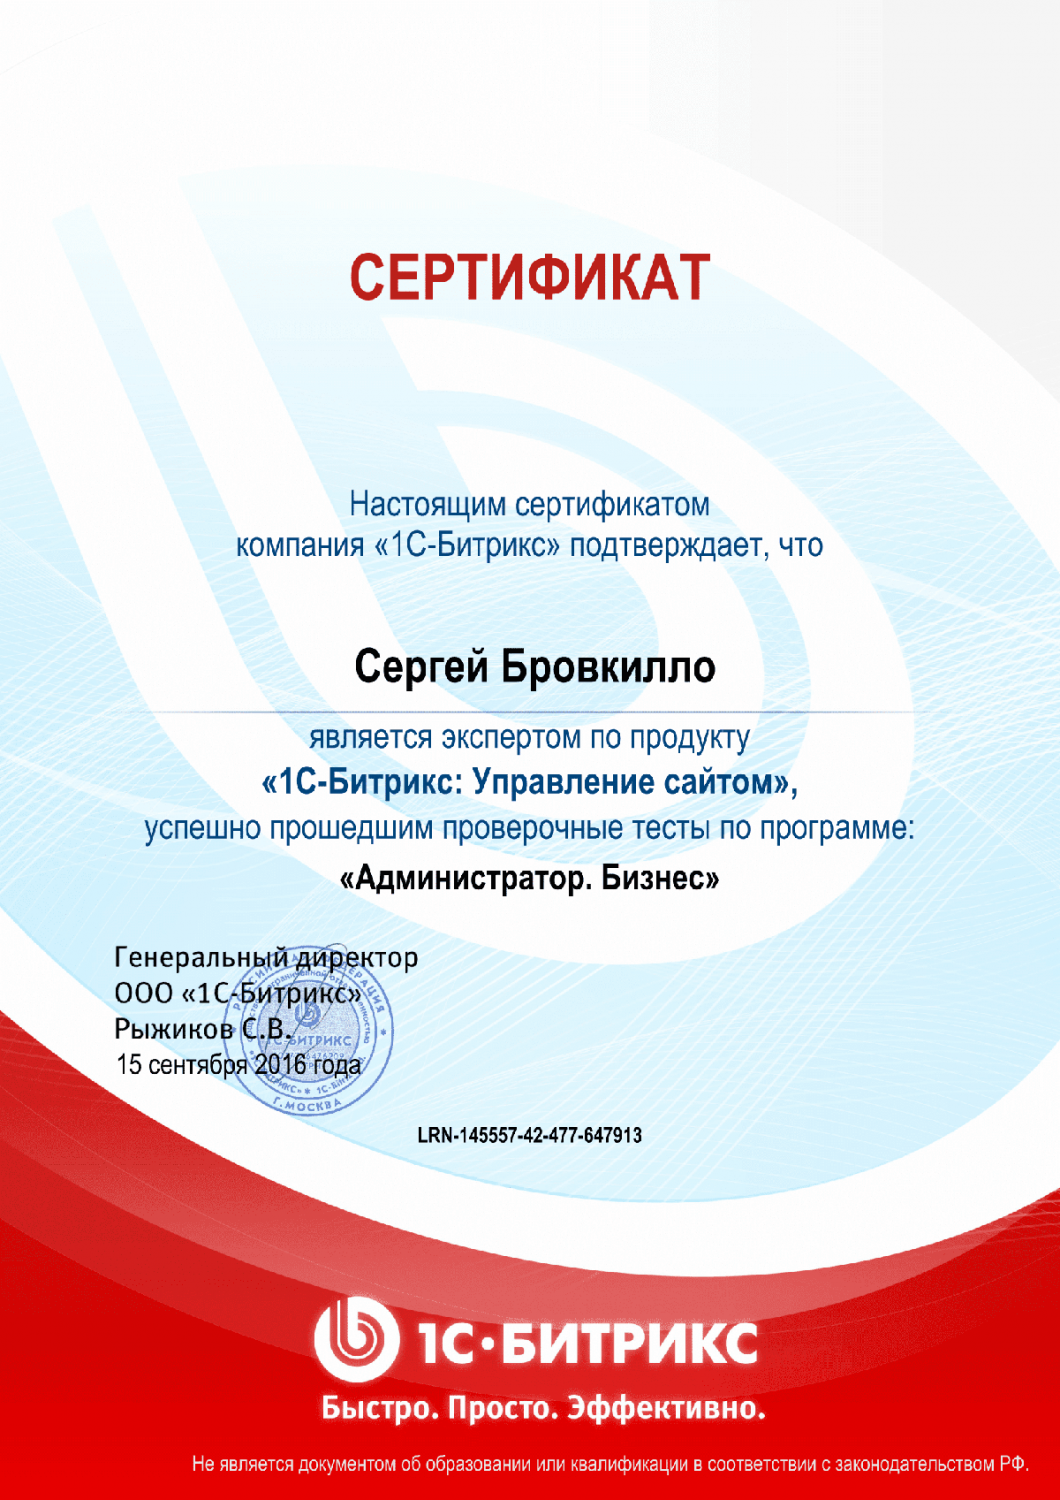 Сертификат эксперта по программе "Администратор. Бизнес" в Новосибирска